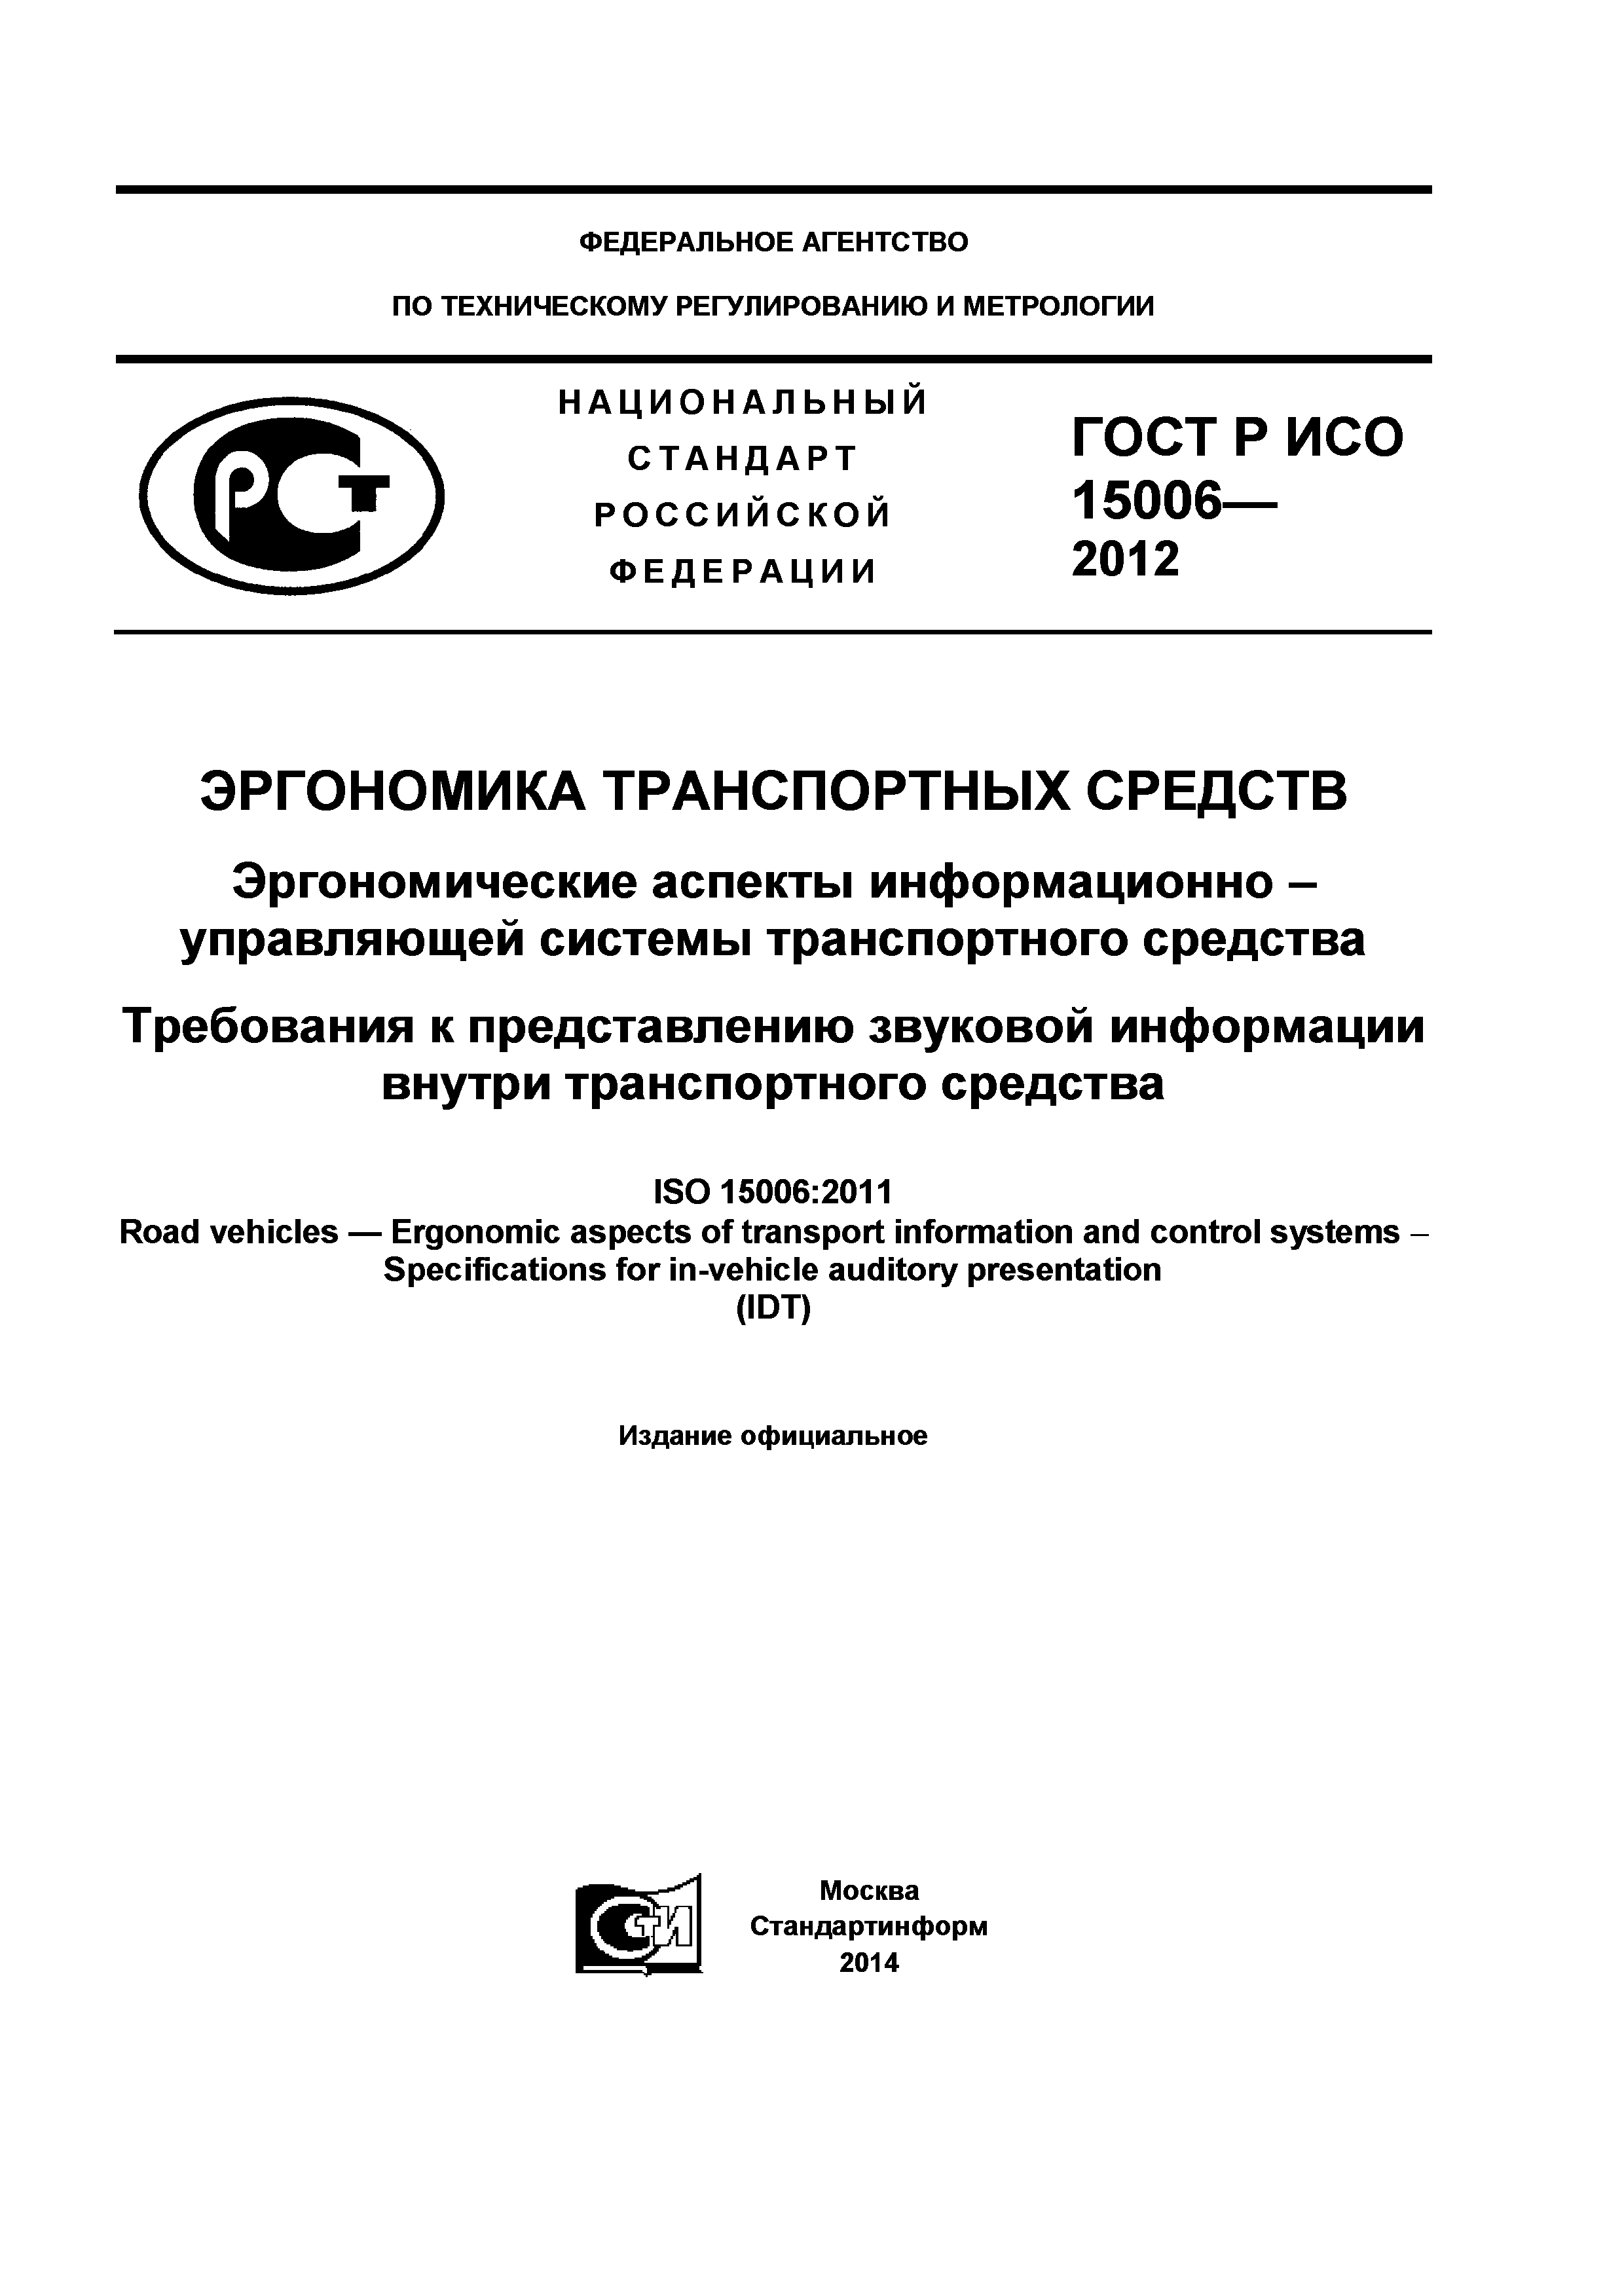 ГОСТ Р ИСО 15006-2012